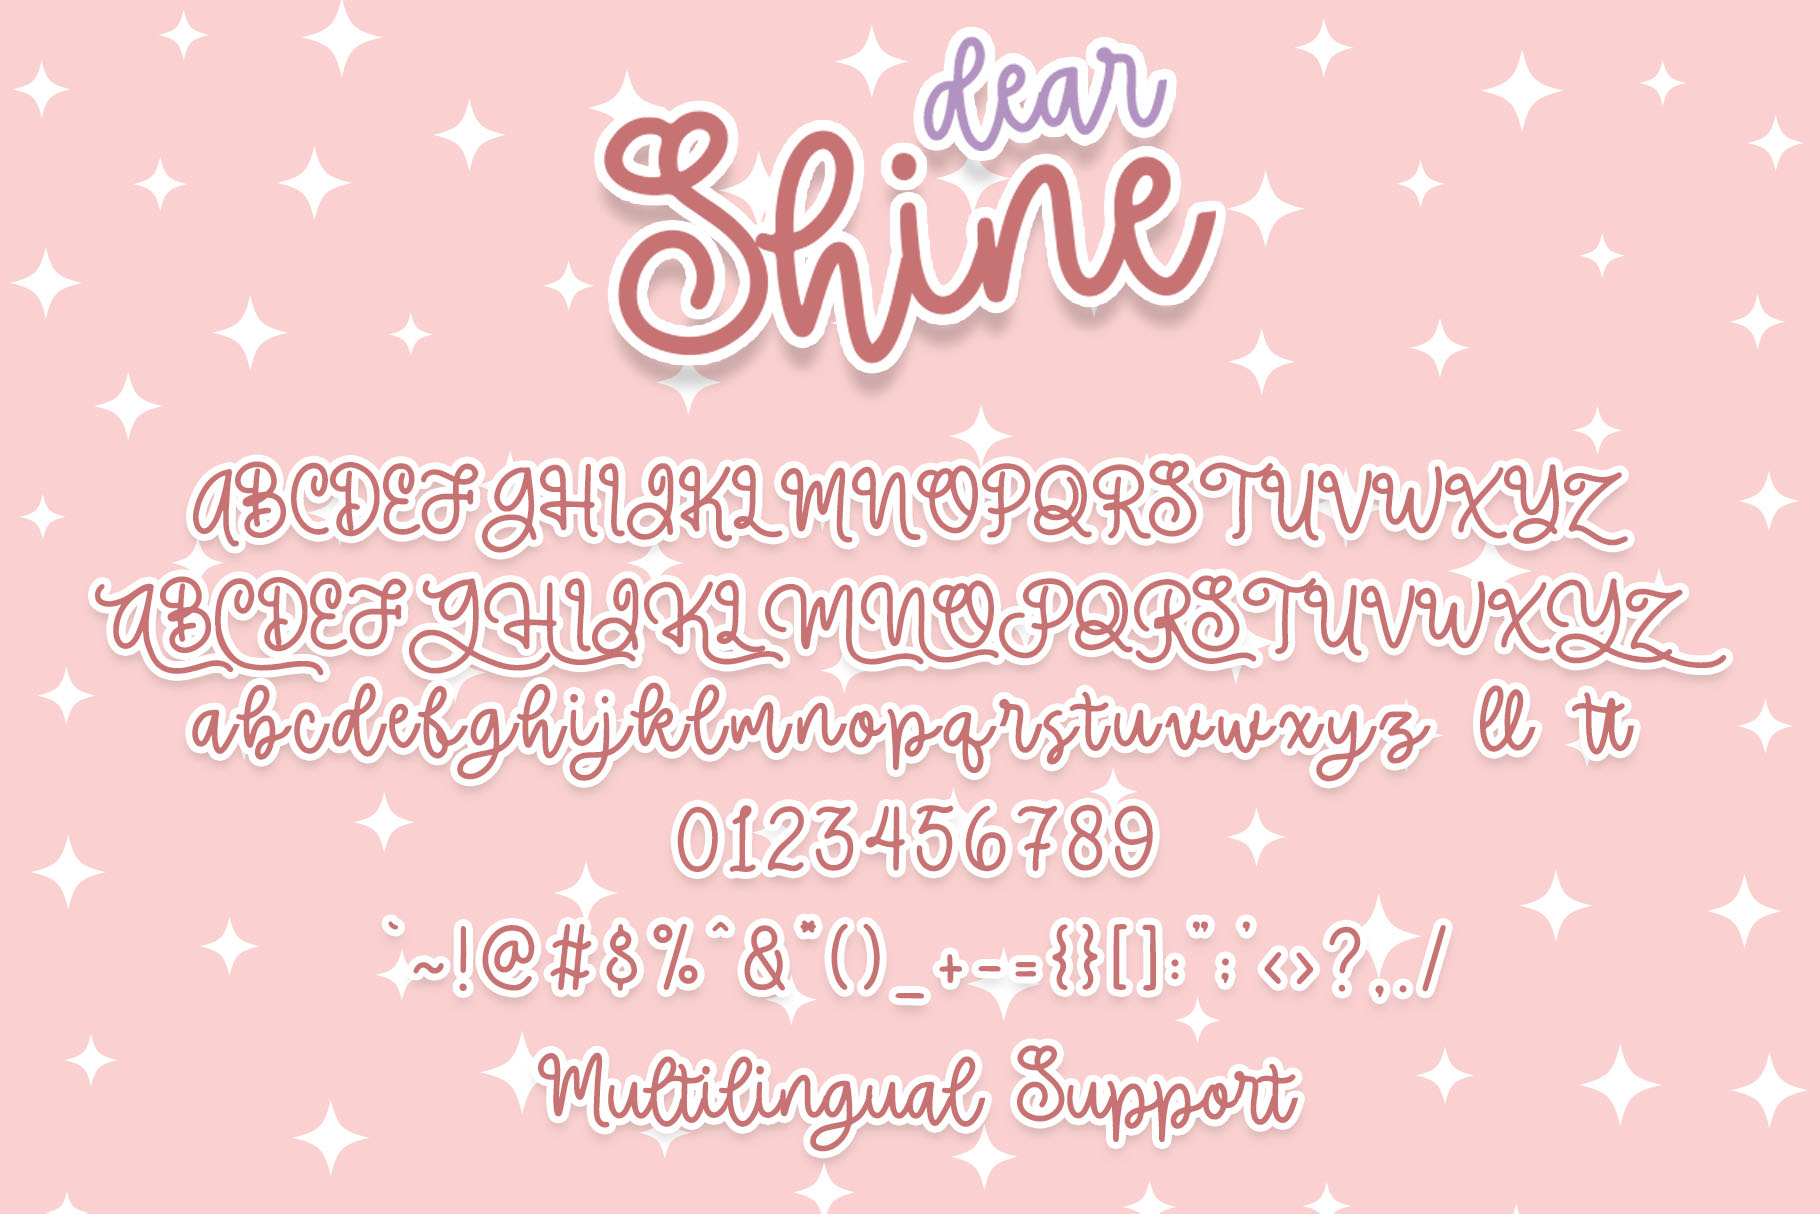 Dear Shine